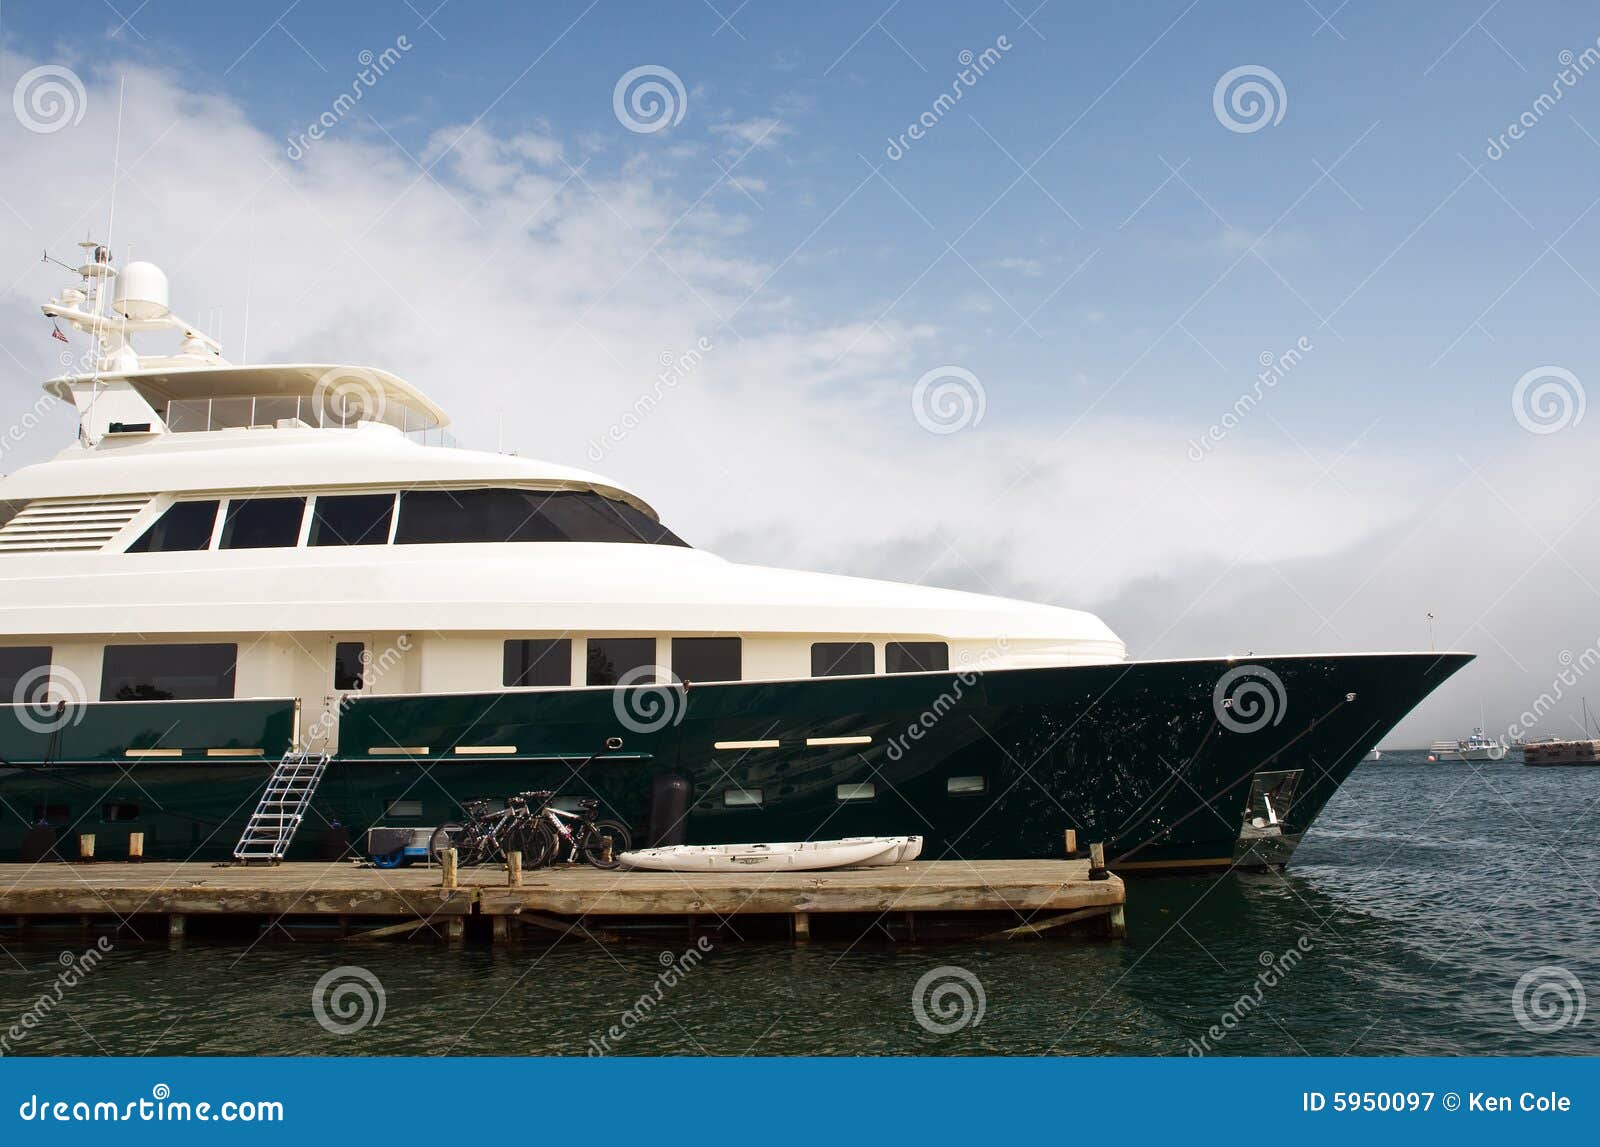 yacht on a dock